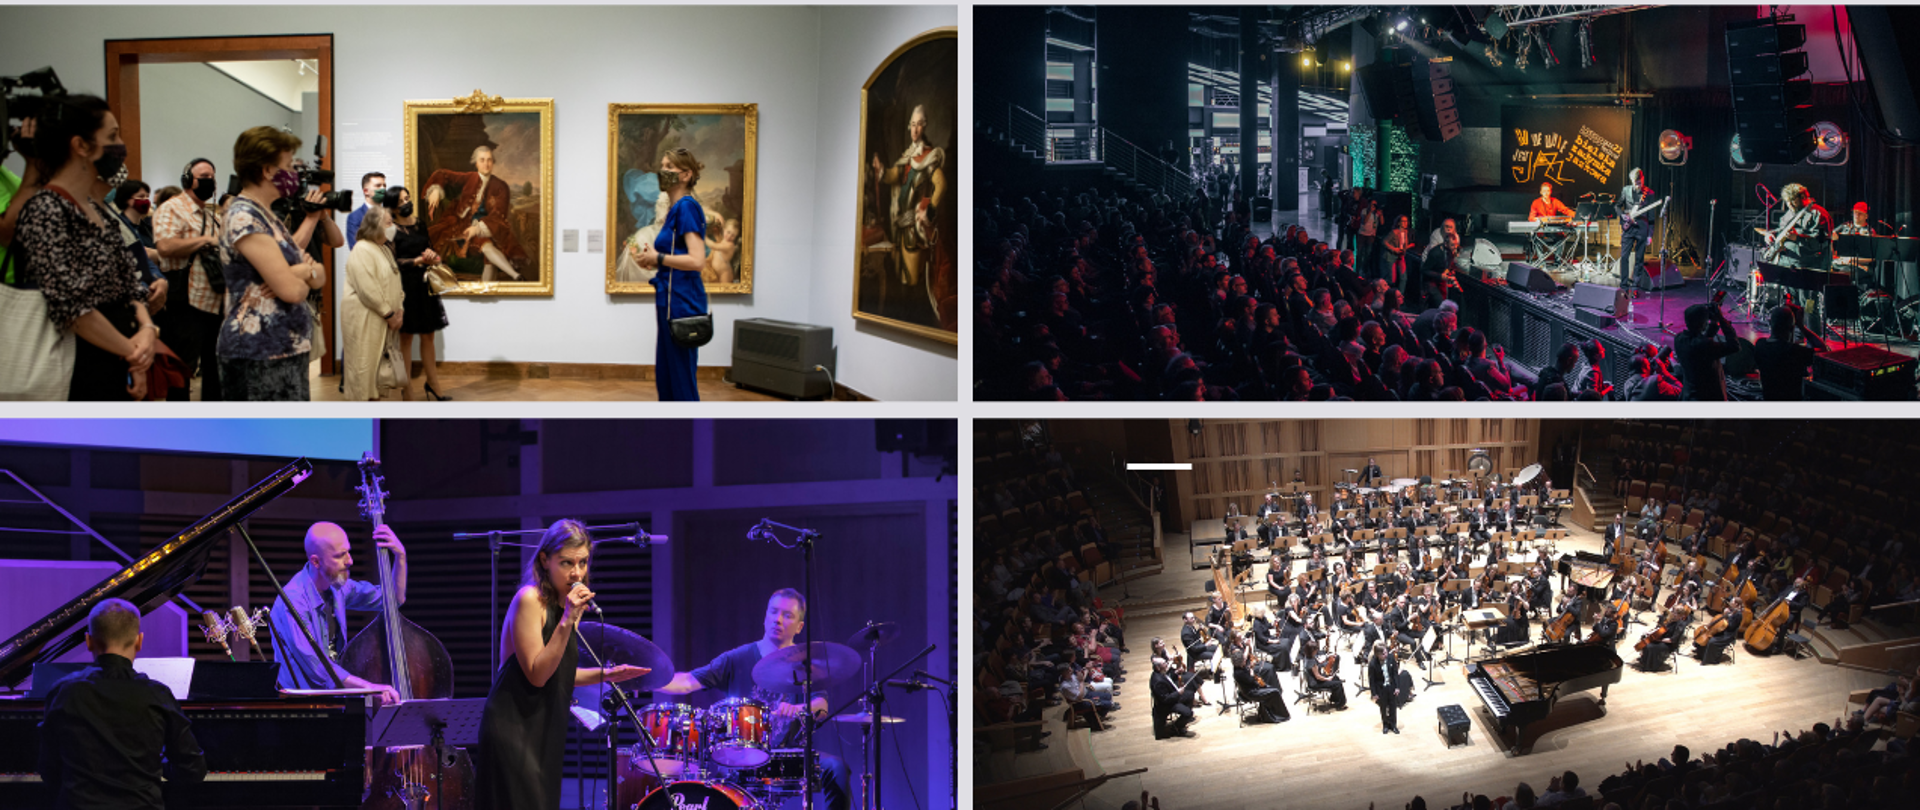 Kolaż zdjęć przedstawiających spotkania z kulturą: zwiedzających w galerii, koncert jazzowy, koncert w filharmonii (muzycy na scenie)